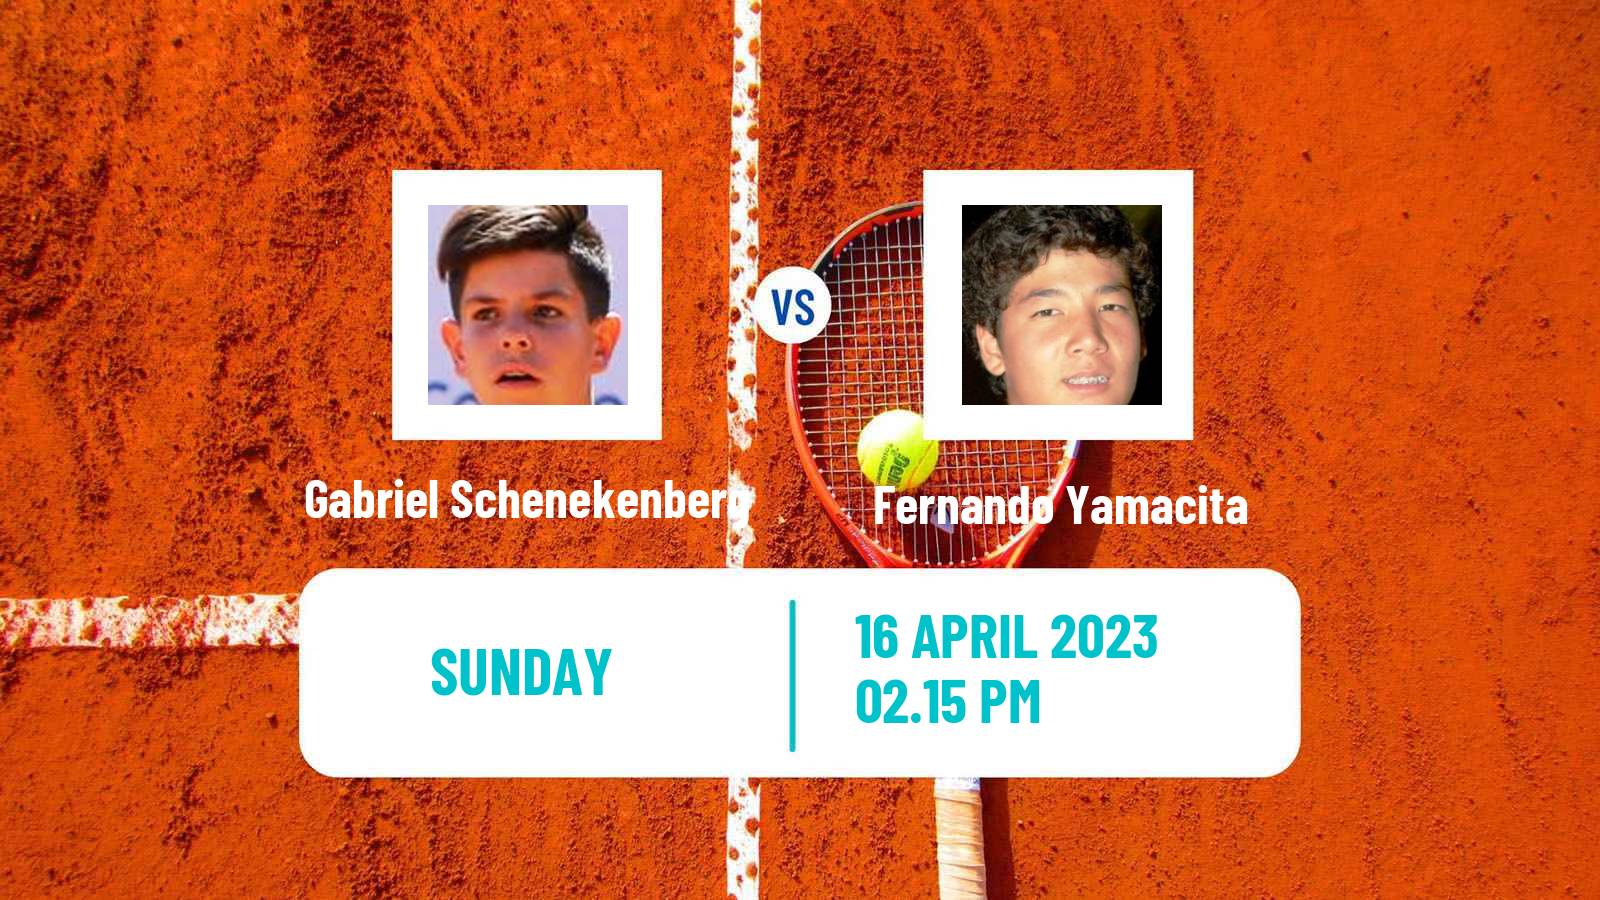 Tennis ATP Challenger Gabriel Schenekenberg - Fernando Yamacita